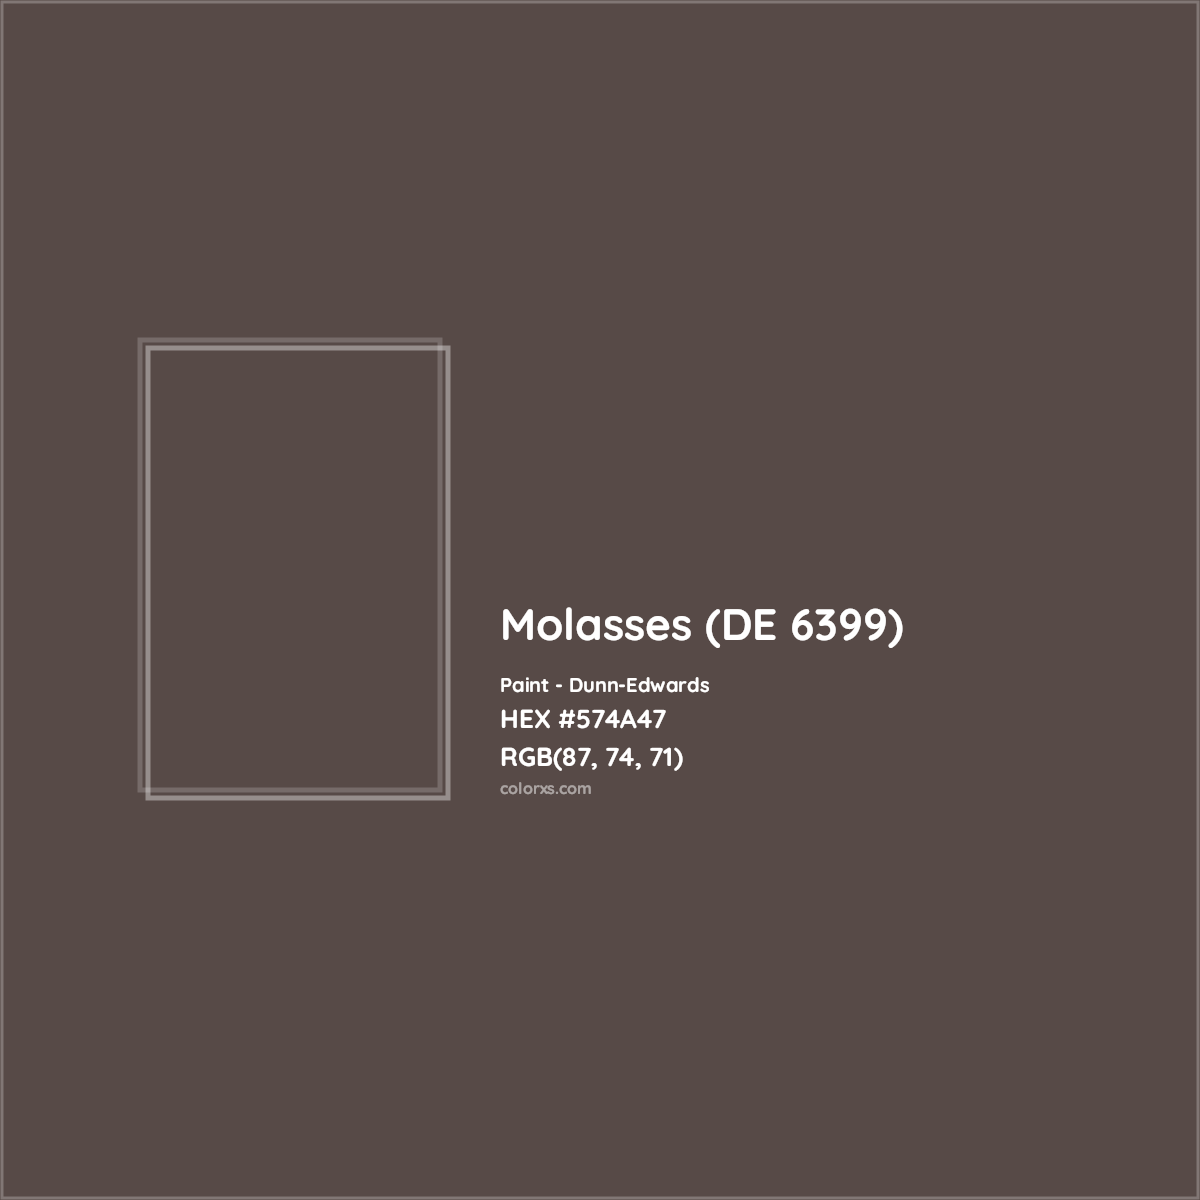 HEX #574A47 Molasses (DE 6399) Paint Dunn-Edwards - Color Code